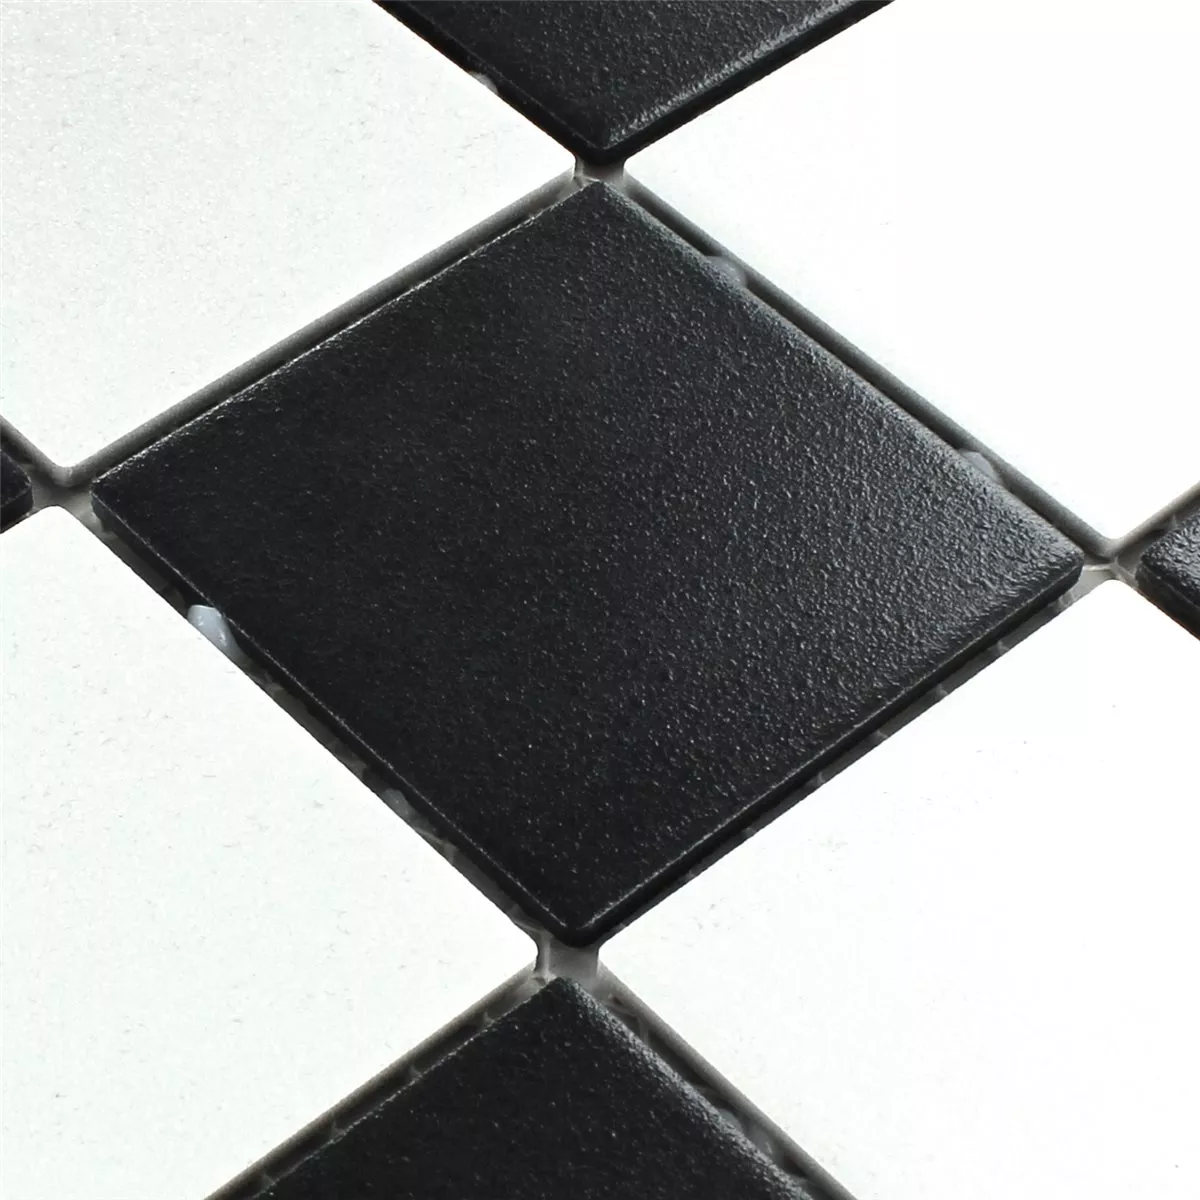 Mosaic Tiles Ceramic Black White Mat